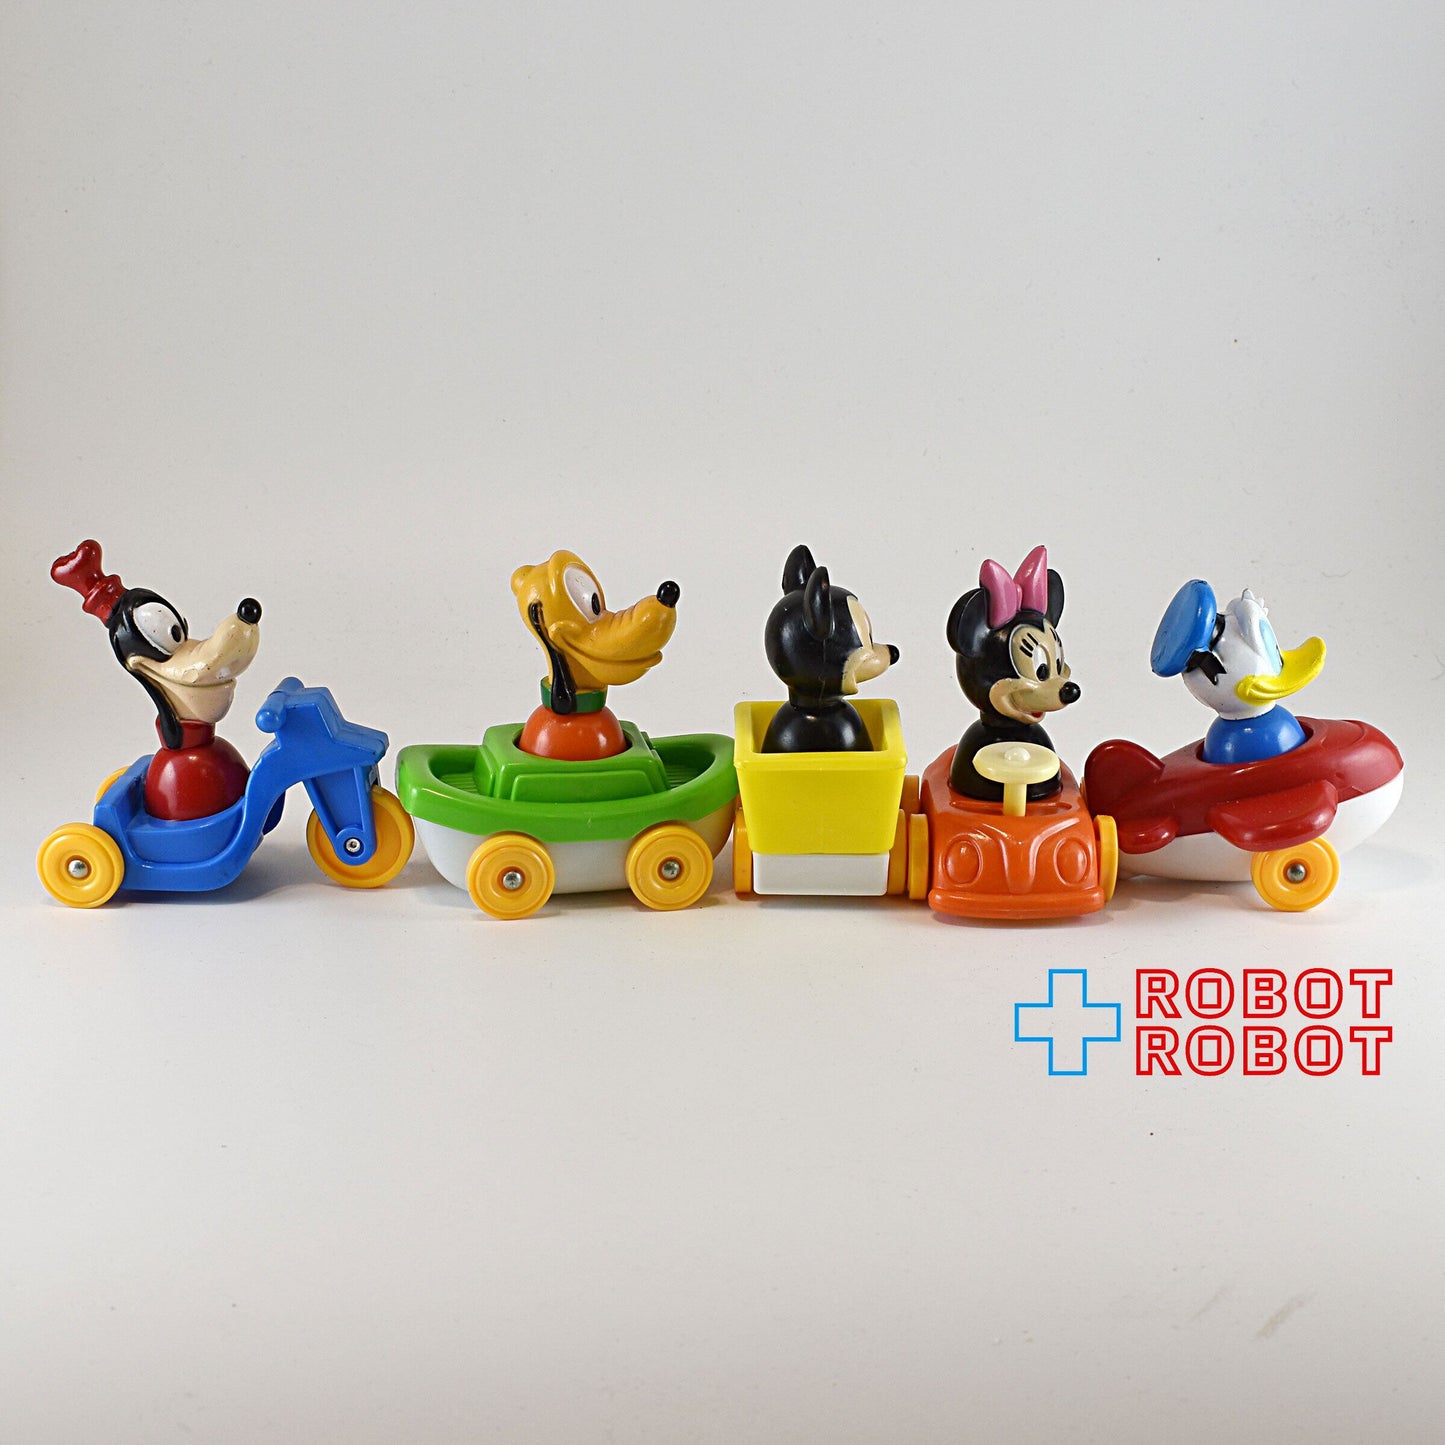 illco toy ディズニー ミッキーマウス ビークルプレイセット インターチェンジャブル フィギュア 箱付